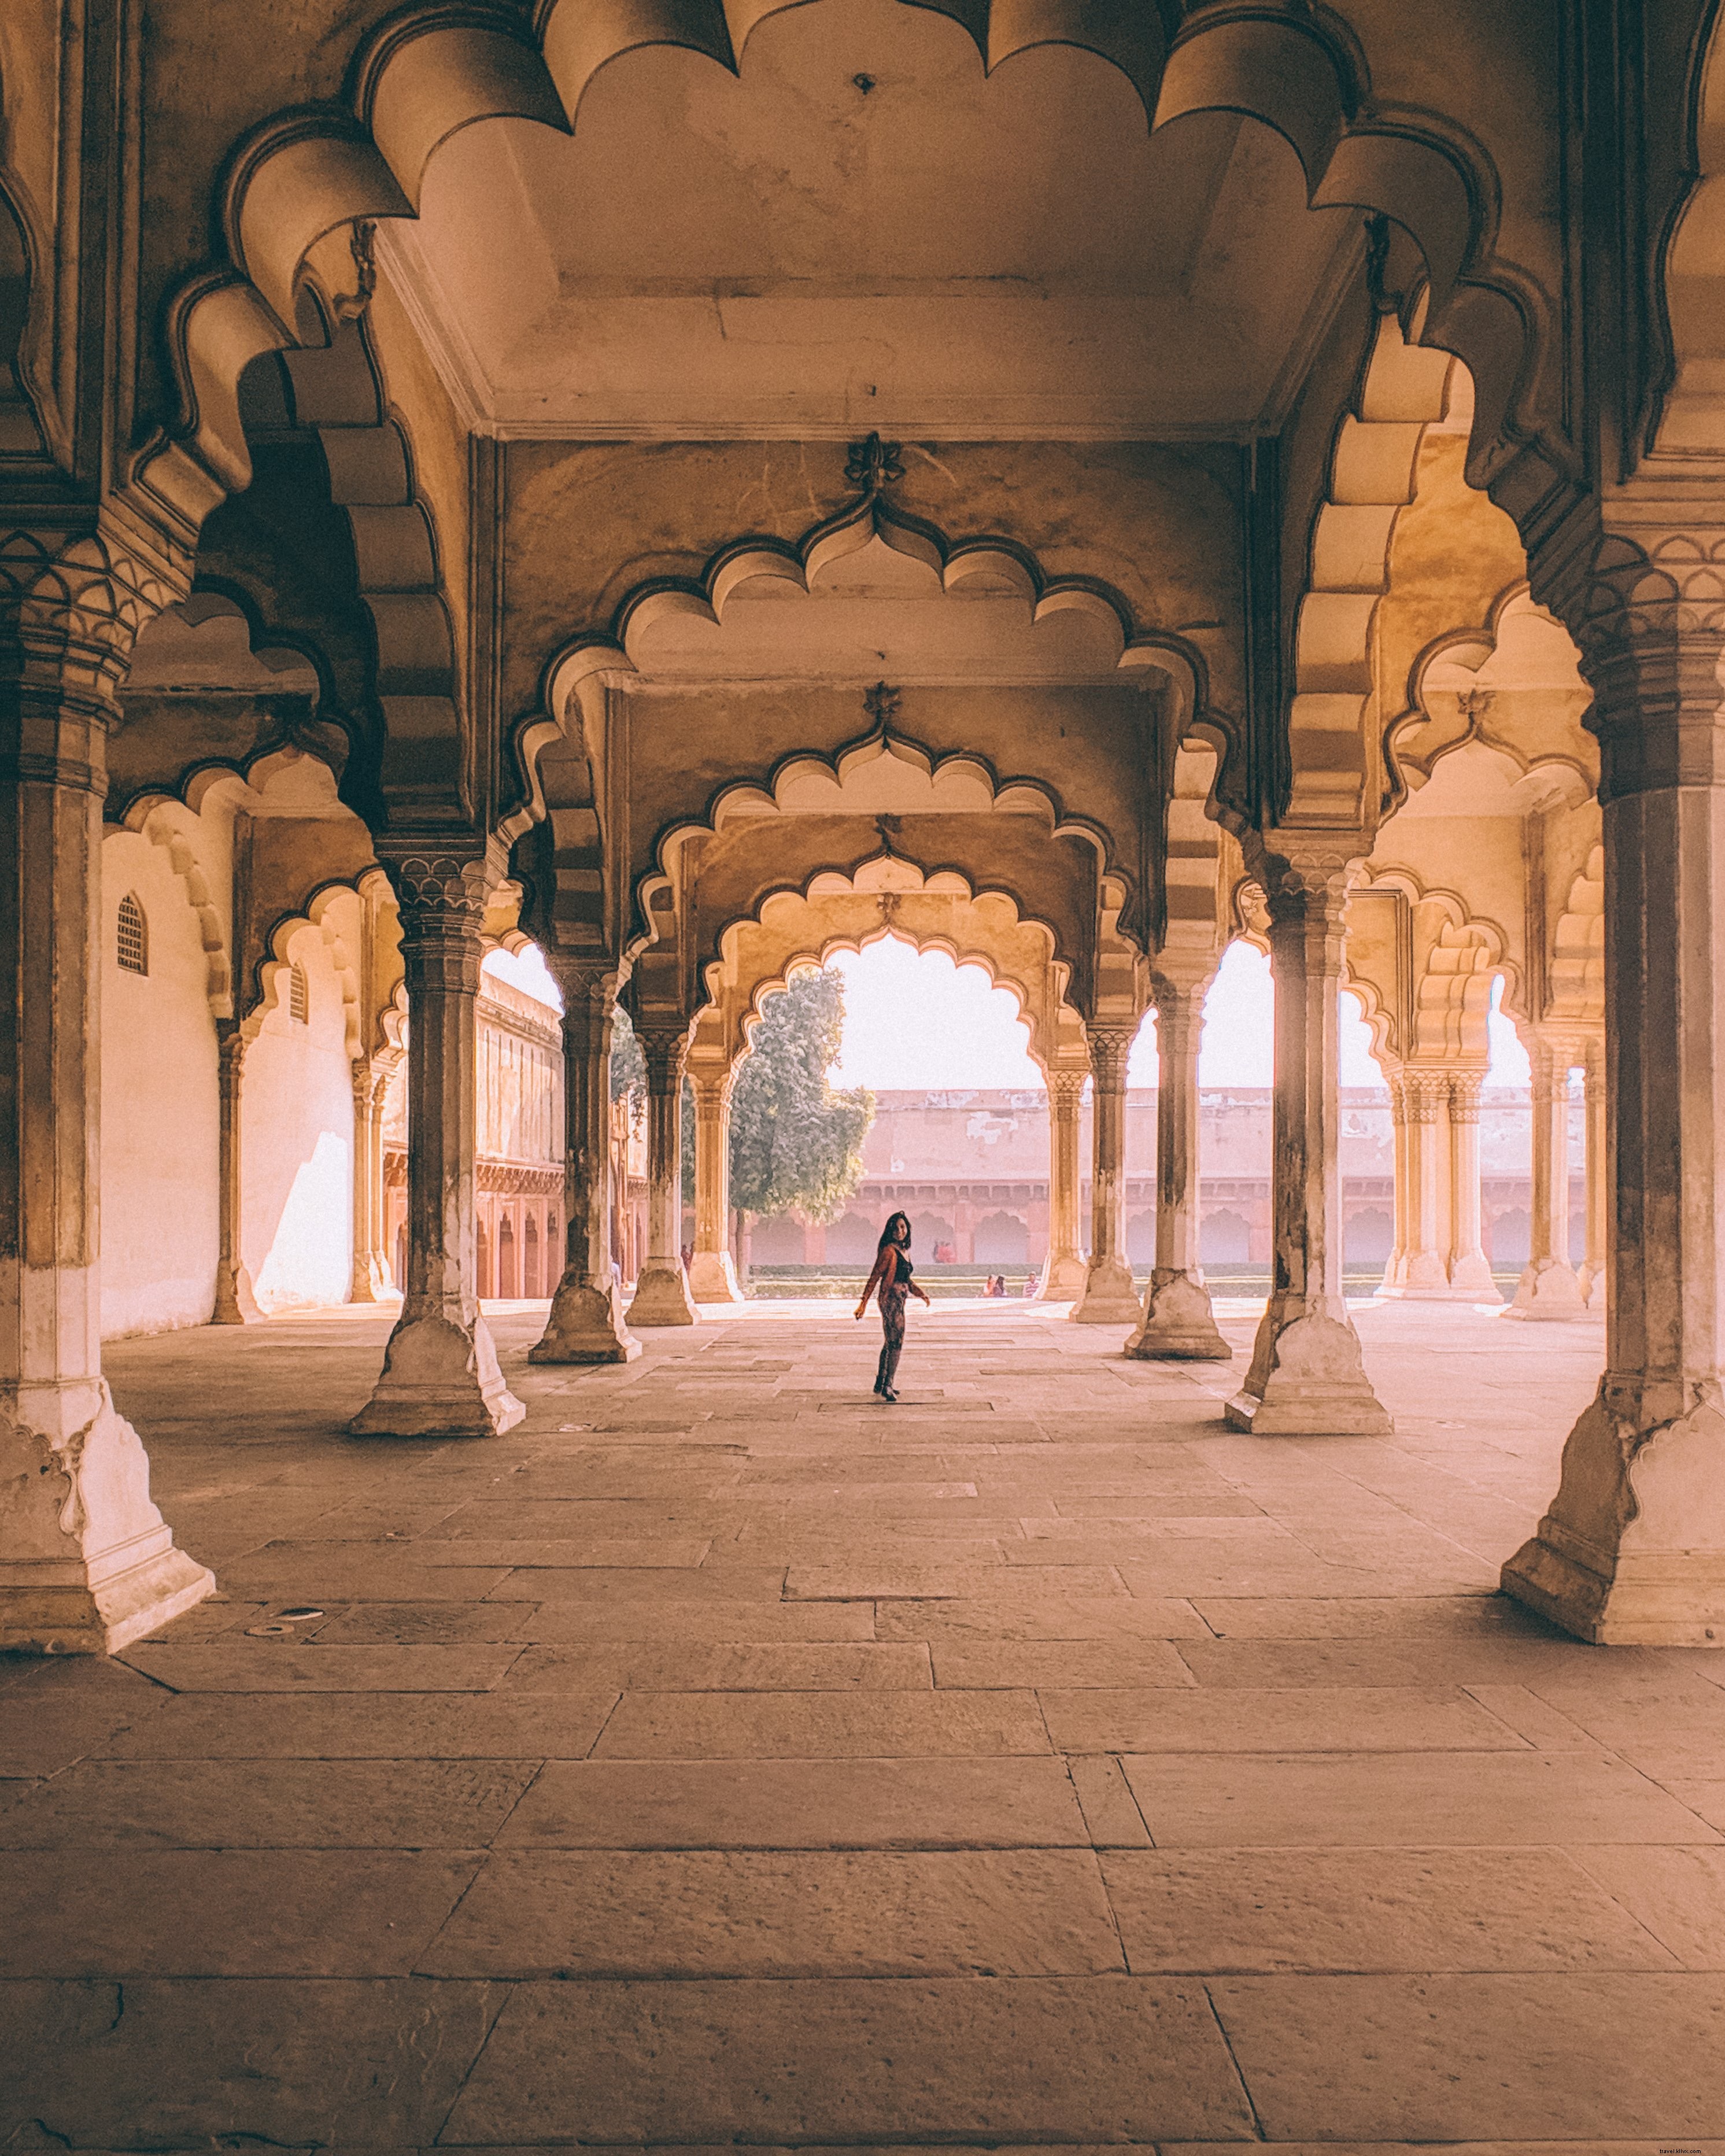 Olhando para trás através dos arcos na Índia - foto